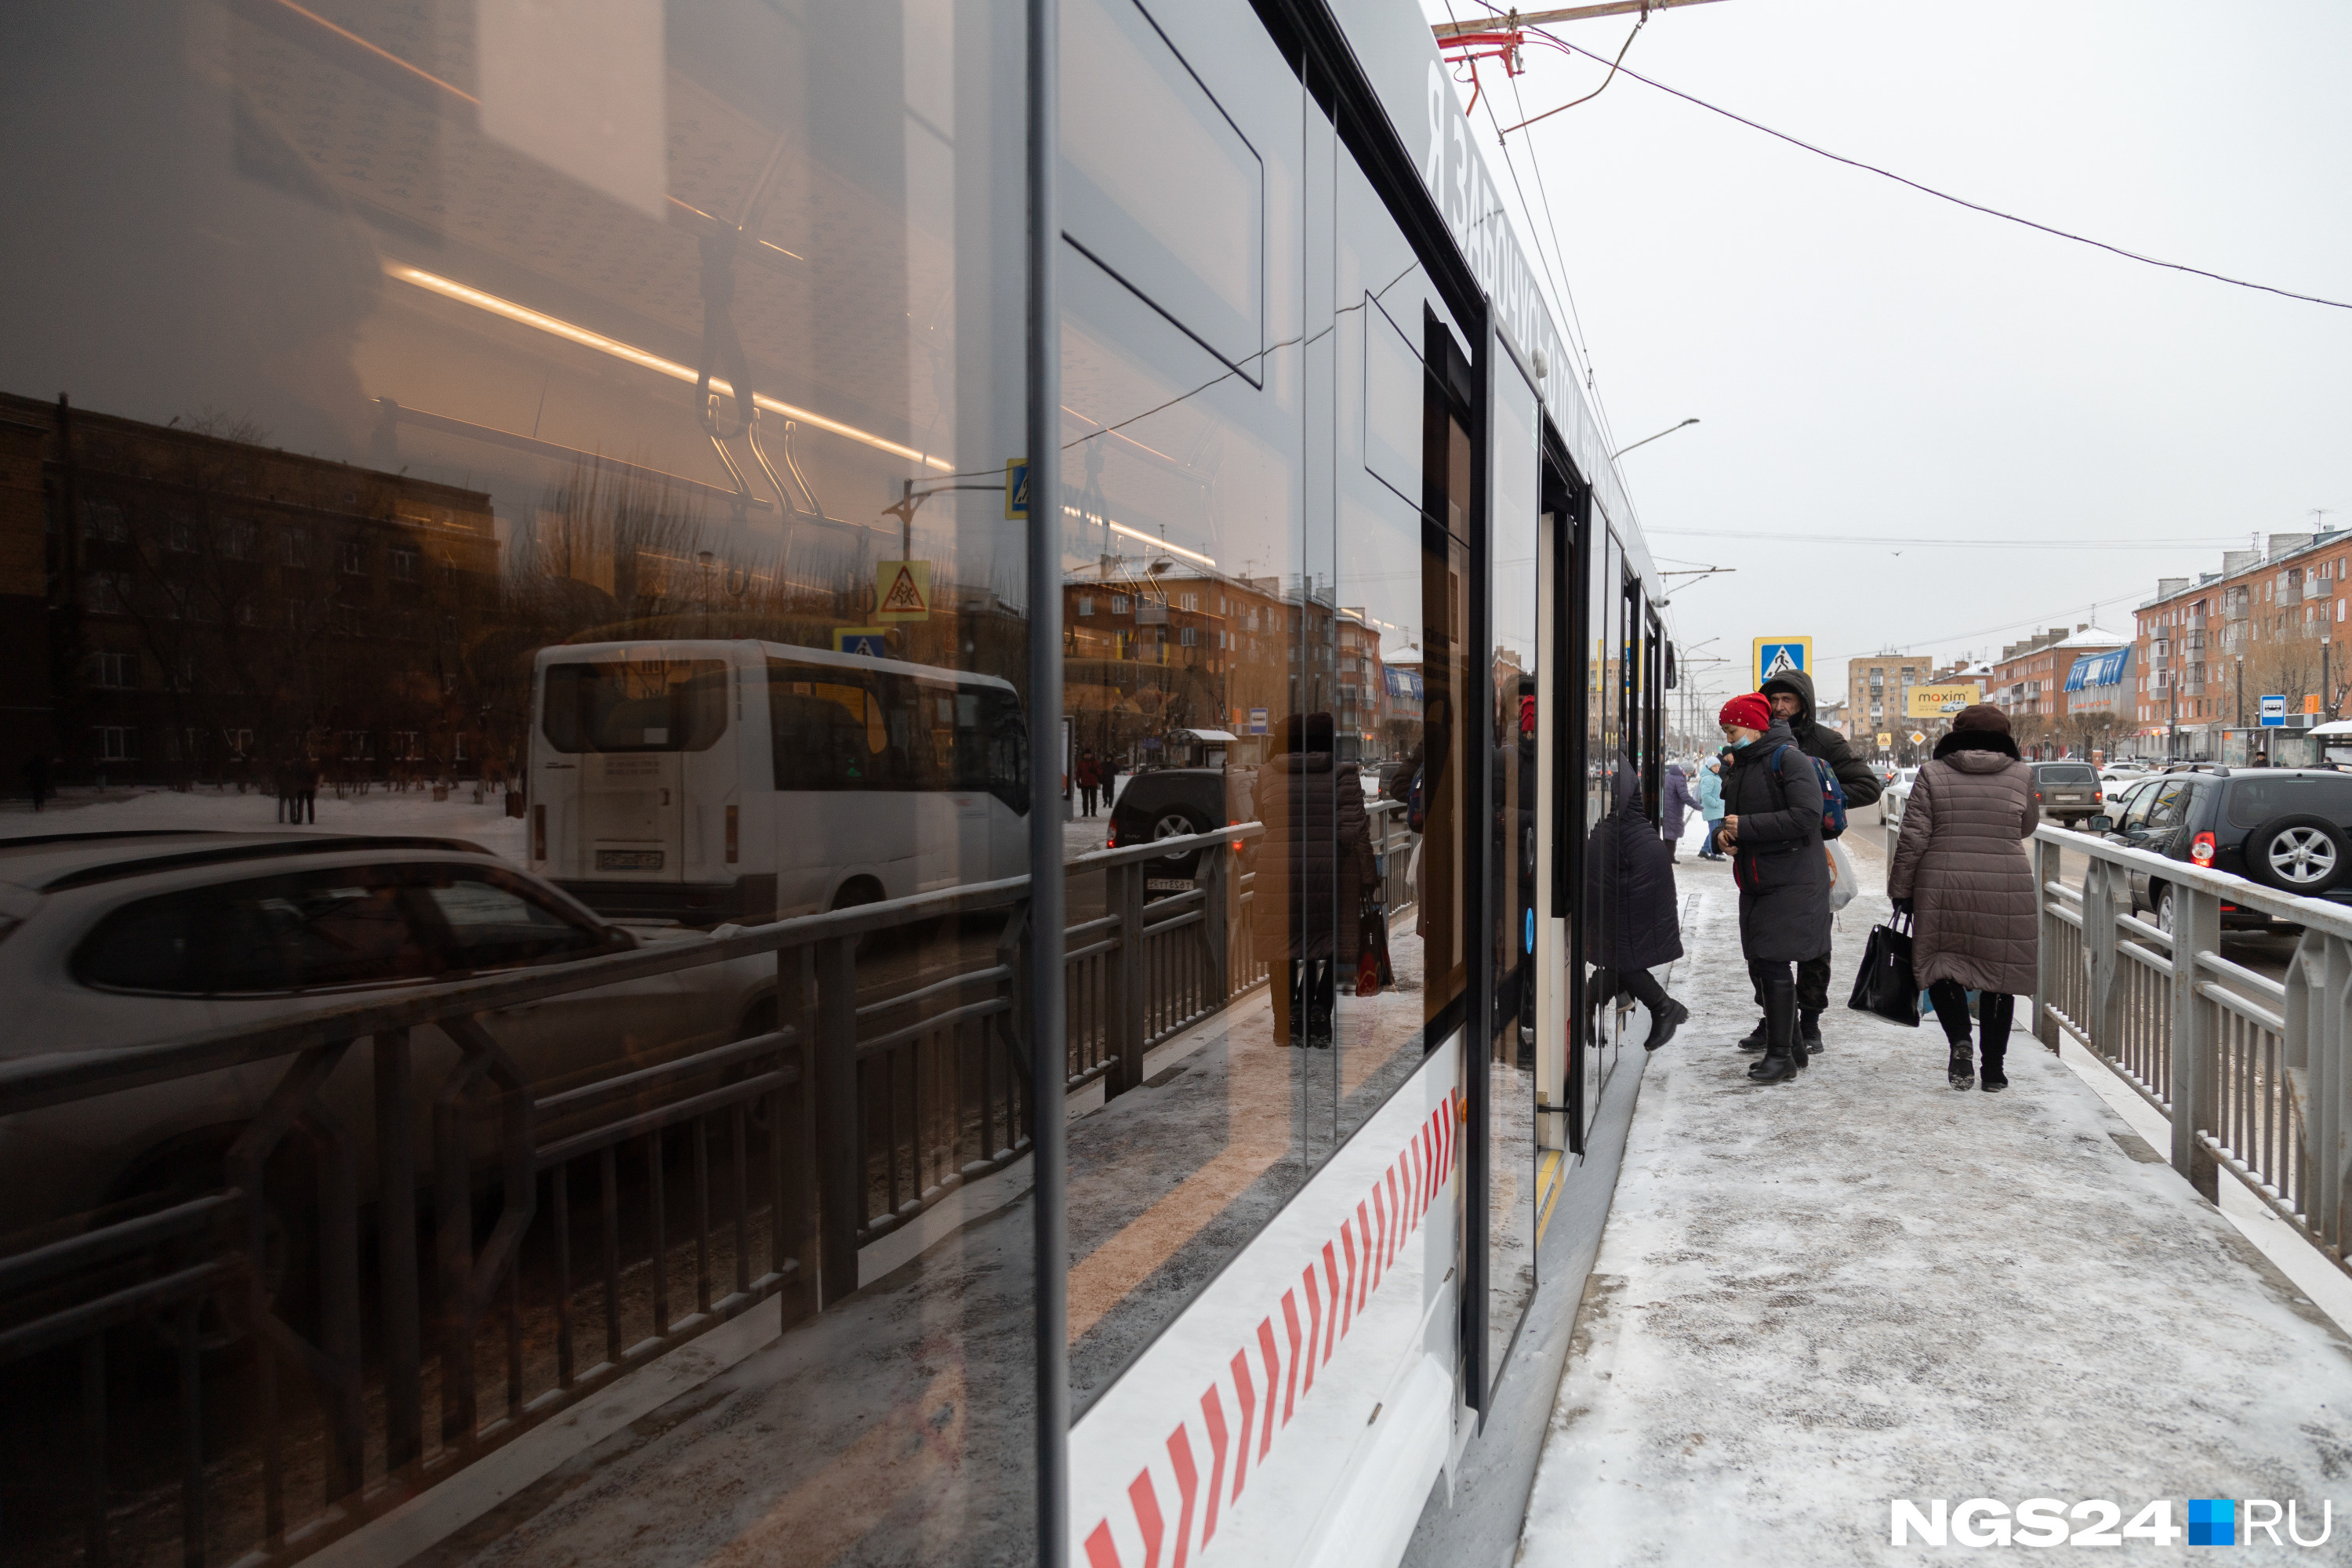 В трамвае 4 двери, но пассажиры по привычке выстроились напротив первой